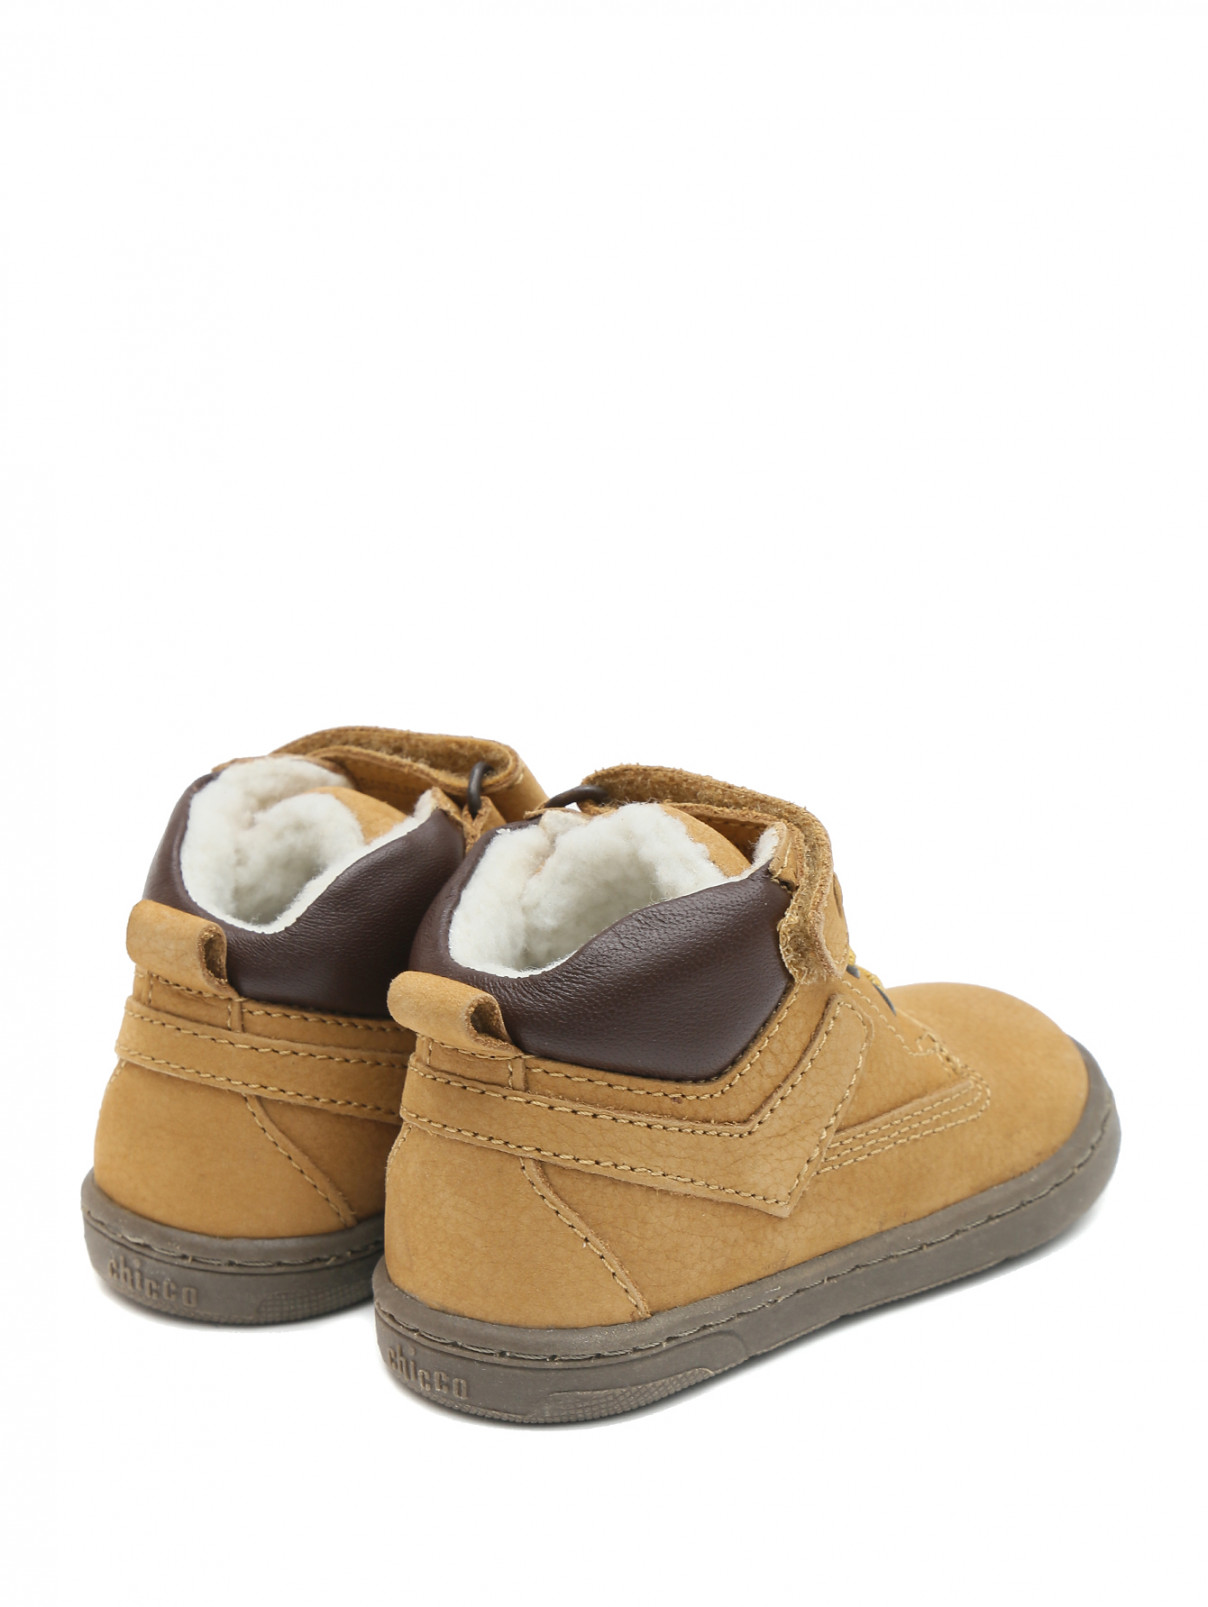 Утепленные замшевые ботинки на шнурках и липучке Chicco  –  Обтравка2  – Цвет:  Бежевый